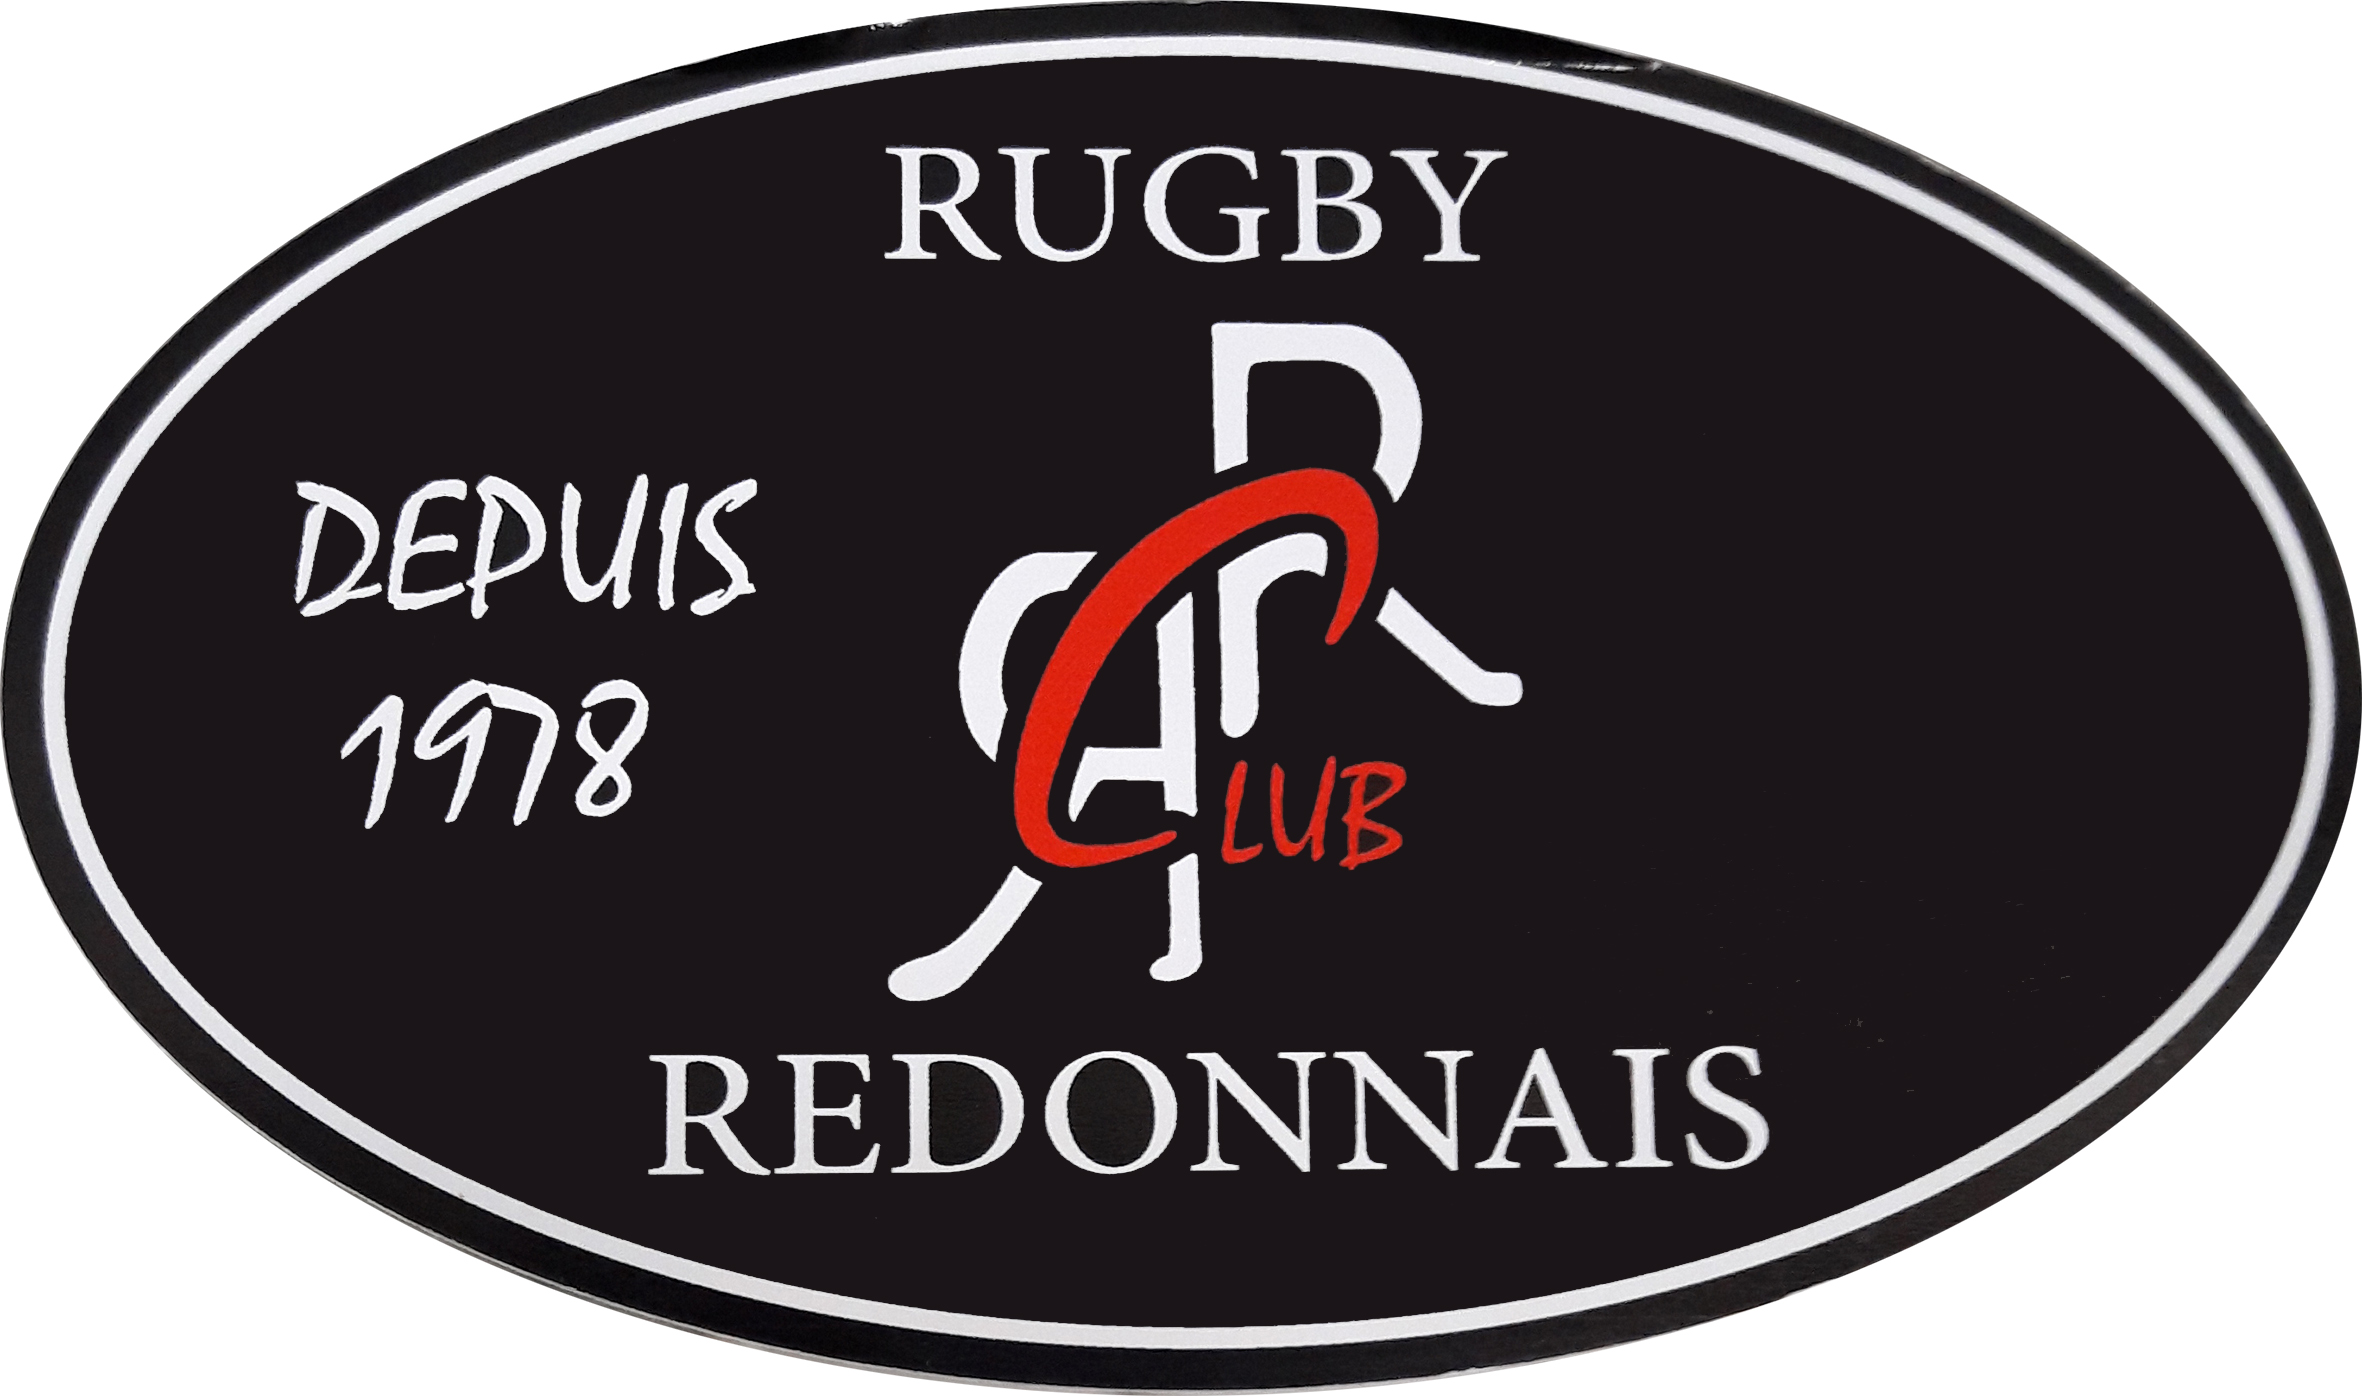 rugby-club-redonnais-logo-606737ad557a5641759738.jpg